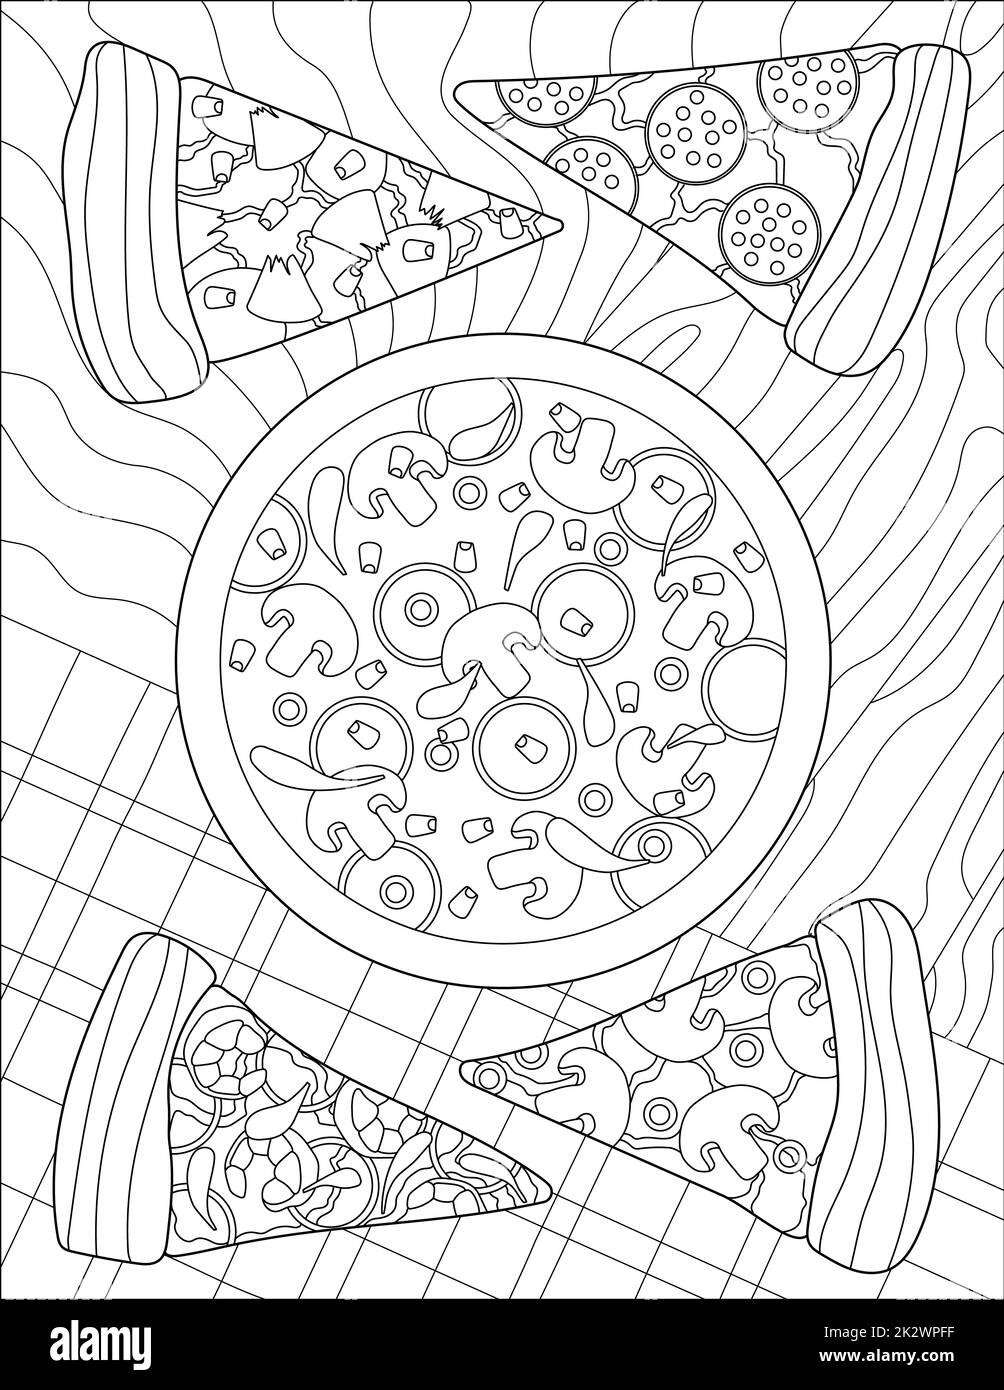 Vektorlinie, die große Pizza mit vier Scheiben an einem Tisch zeichnet. Digital lineart Image – leckere Kuchenmahlzeit mit gemusterter Holztheke. Kunstvoll gestaltete Dinner-Serviette. Stockfoto